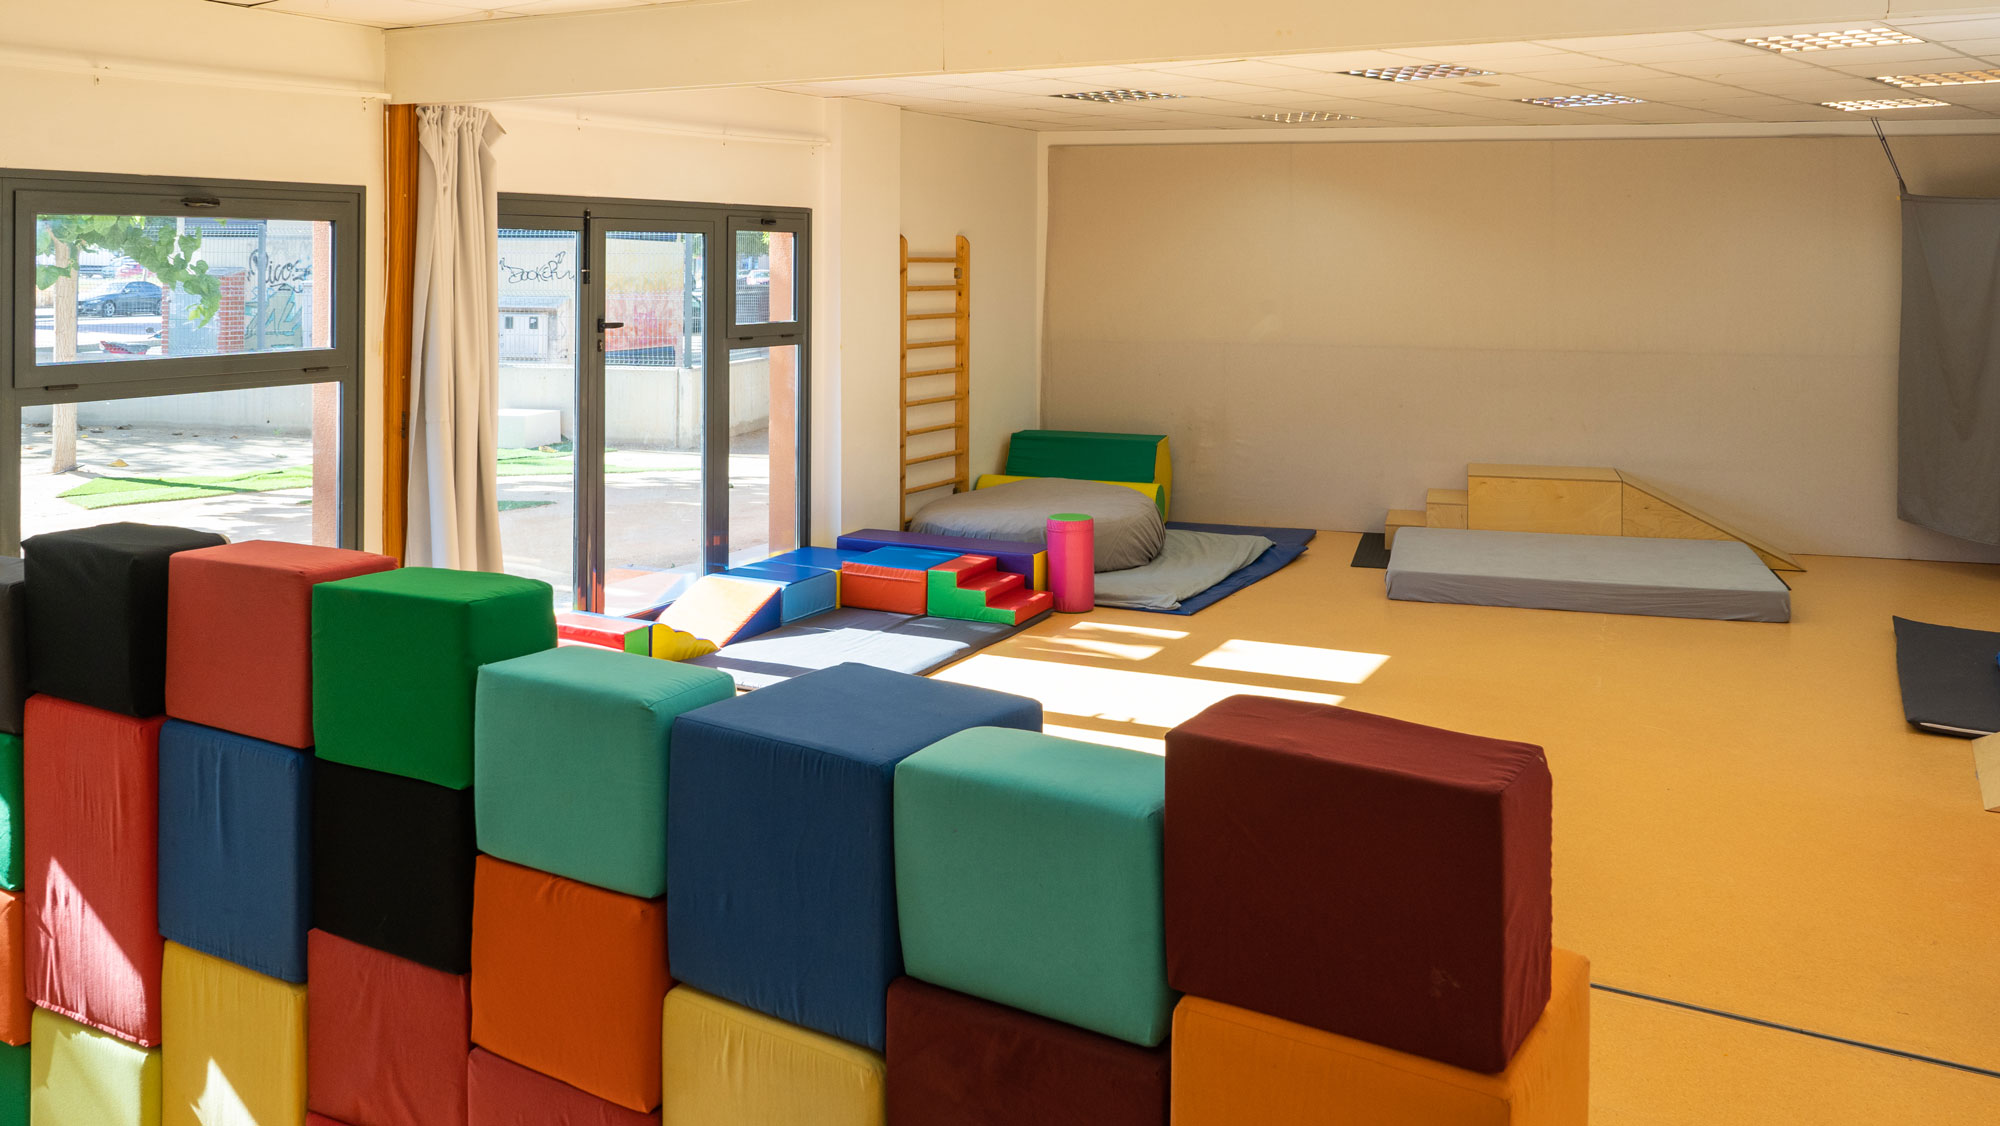 Interior de la Sala de Psicomotricidad de la Escuela Infantil EMPI en Murcia, un espacio acogedor y estimulante diseñado para el desarrollo integral de los niños, lleno de colores vibrantes y materiales educativos.